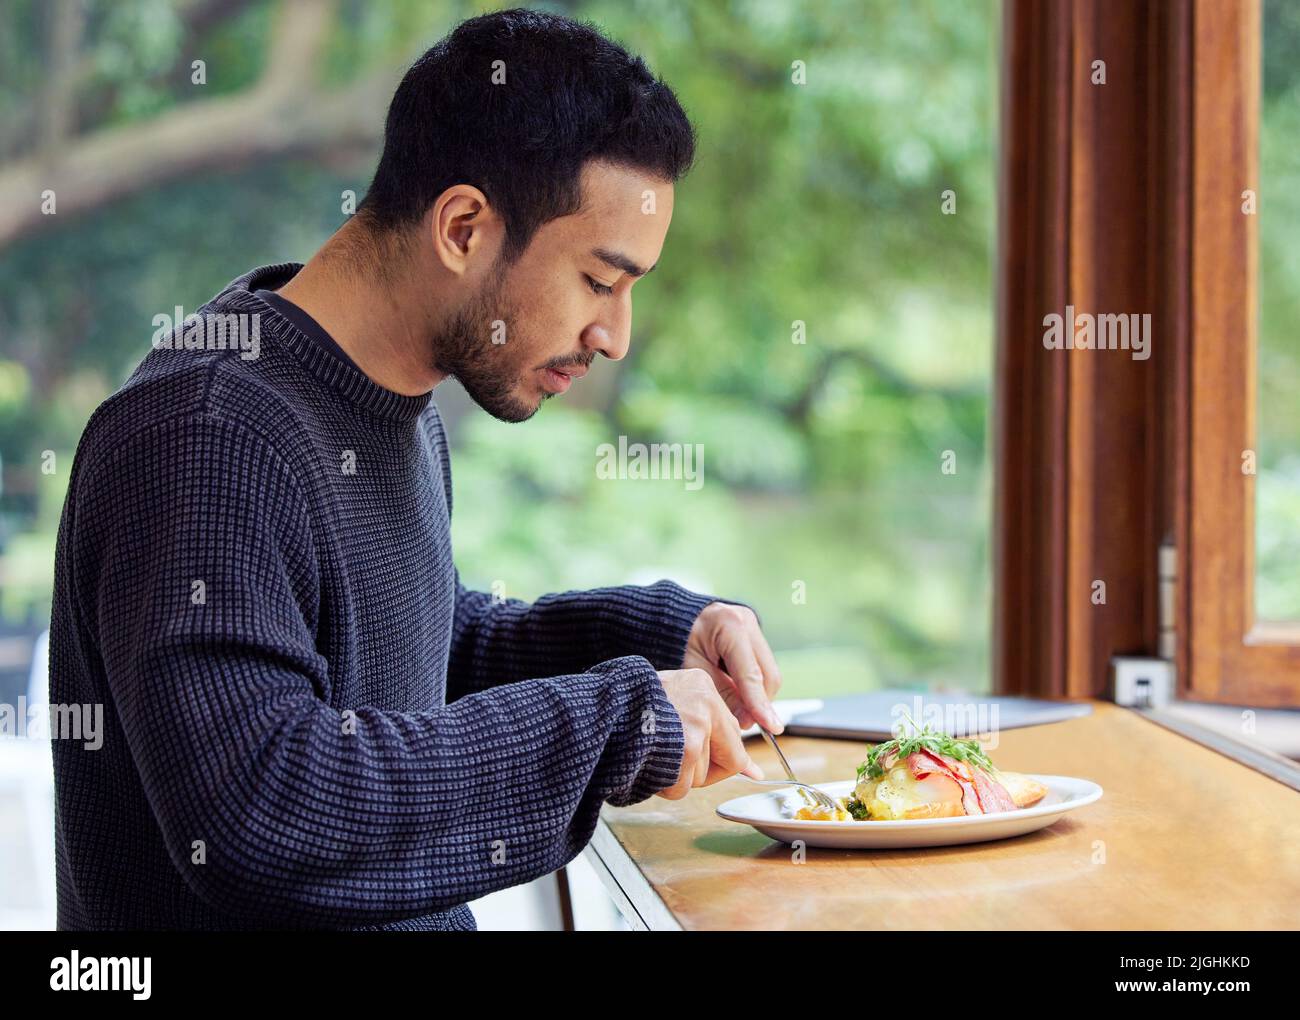 Ich komme immer wieder hierher für das leckere Essen. Ein Mann genießt einen Teller Essen in einem Café. Stockfoto